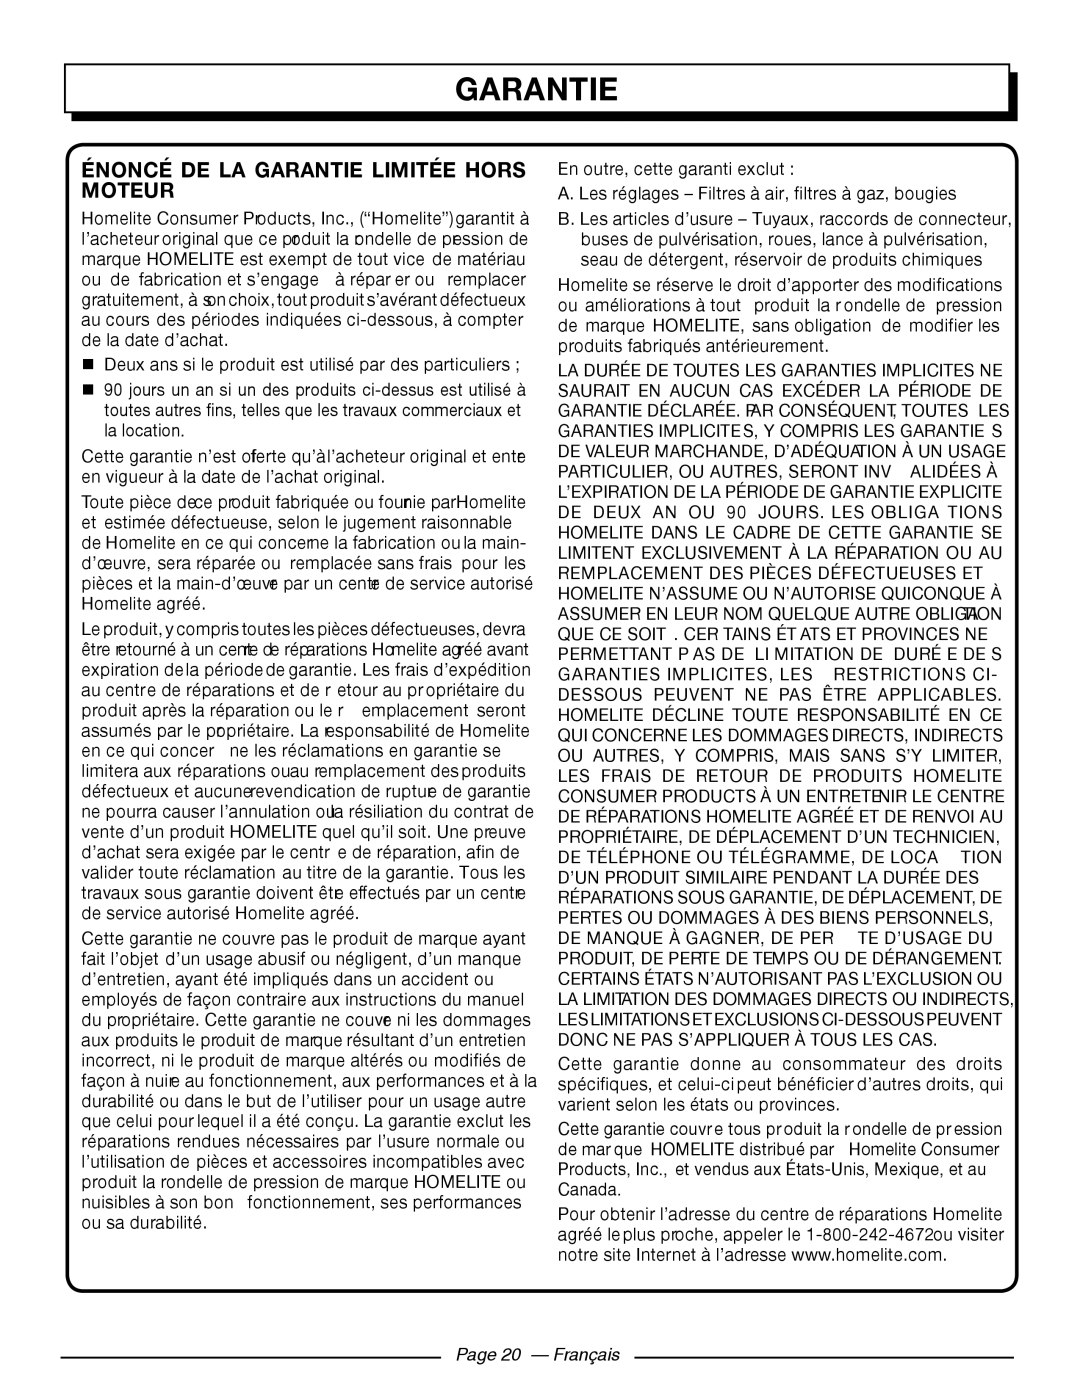 Homelite UT80709, UT80911 manuel dutilisation Énoncé De La Garantie Limitée Hors Moteur, Page 20 - Français 